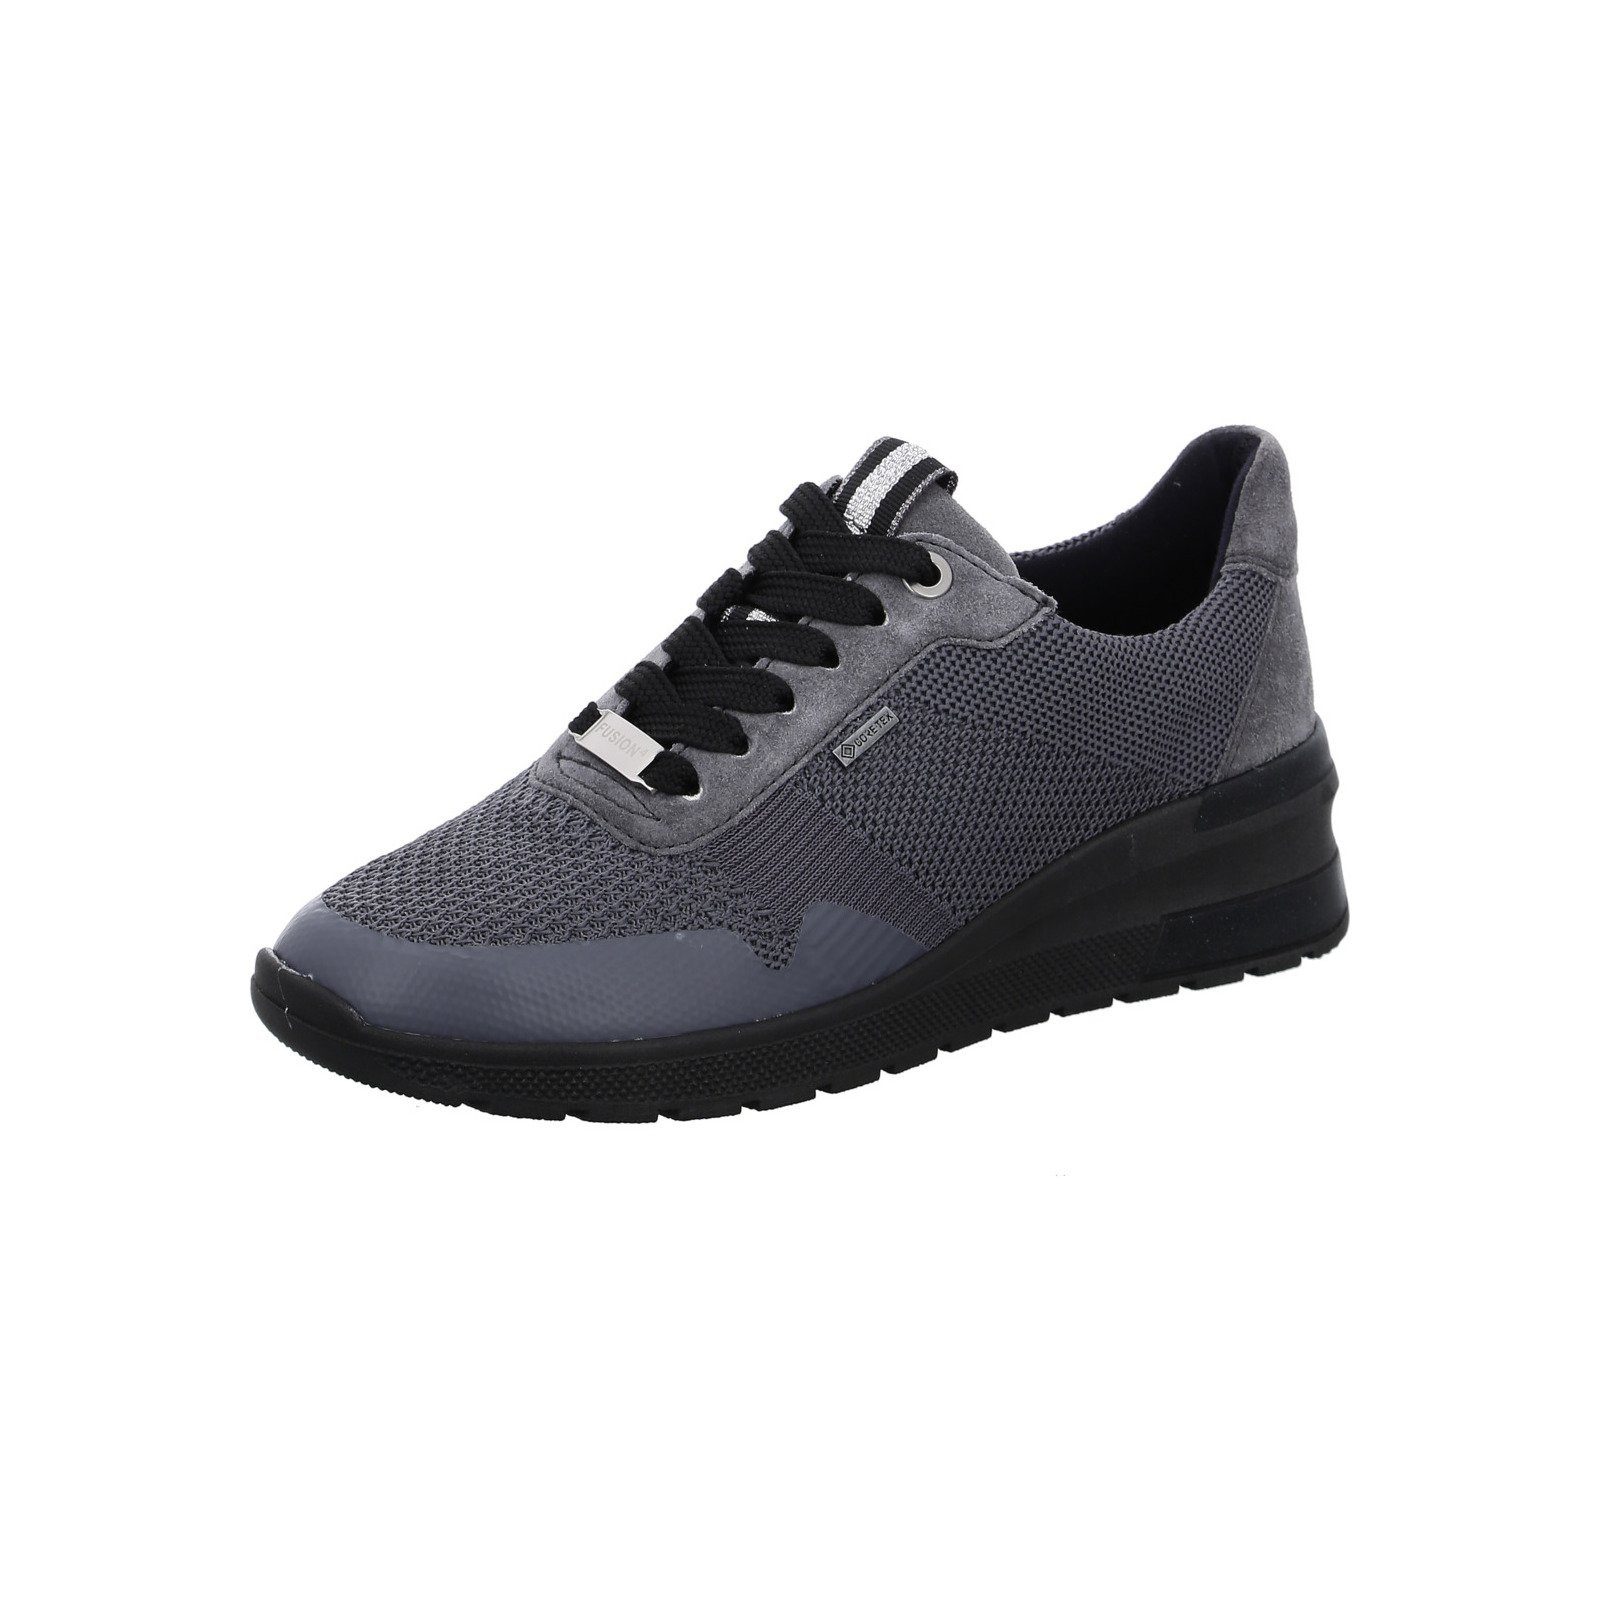 Ara Neapel - Damen Schuhe Schnürschuh Sneaker Textil grau